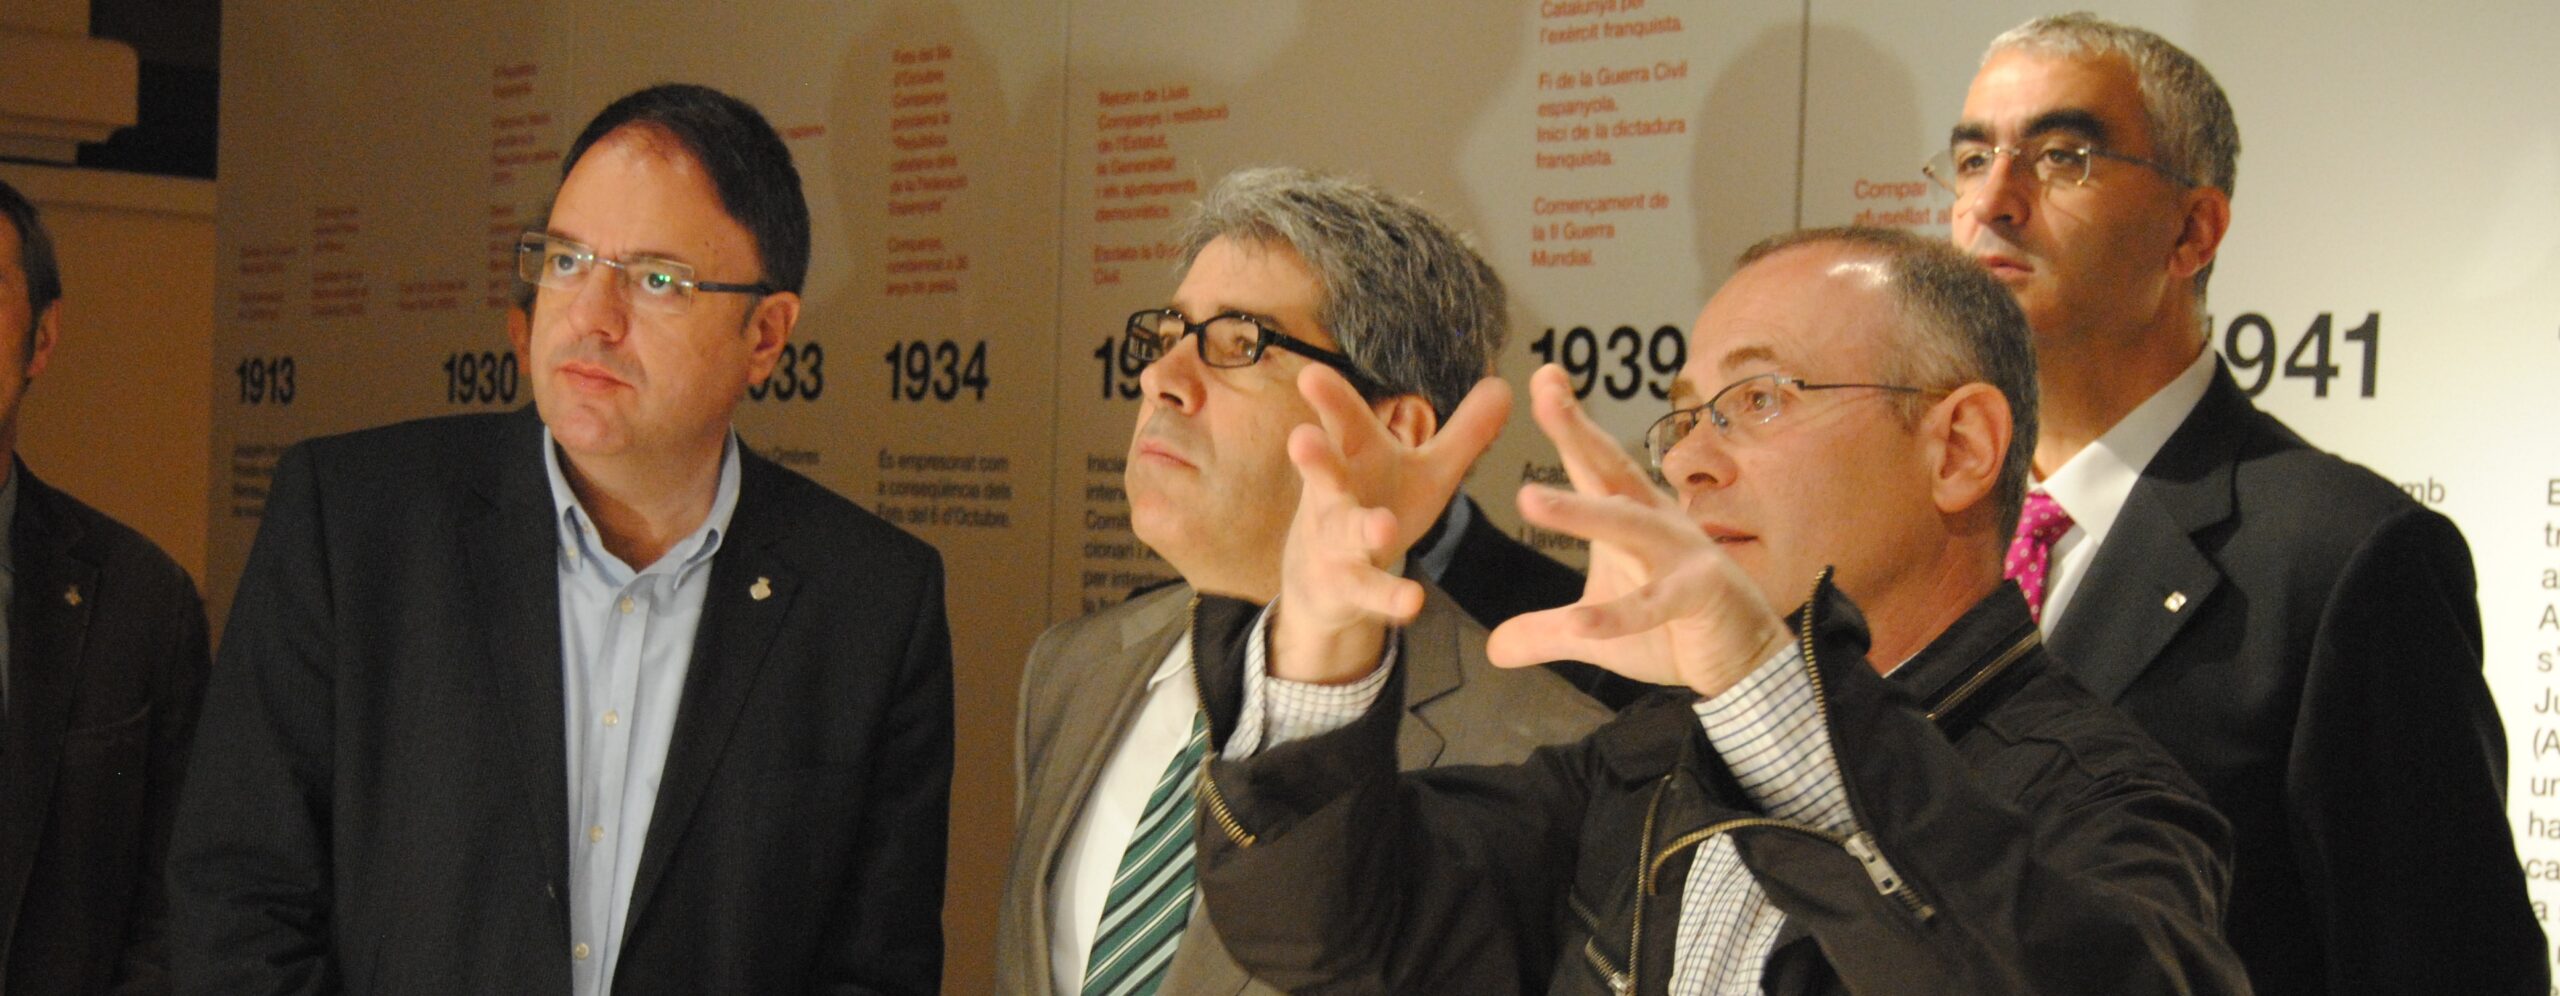 Francesc Homs visita l’exposició sobre Amat-Piniella, en plena polèmica pel vídeo de Telemadrid que equipara catalanisme i nazisme